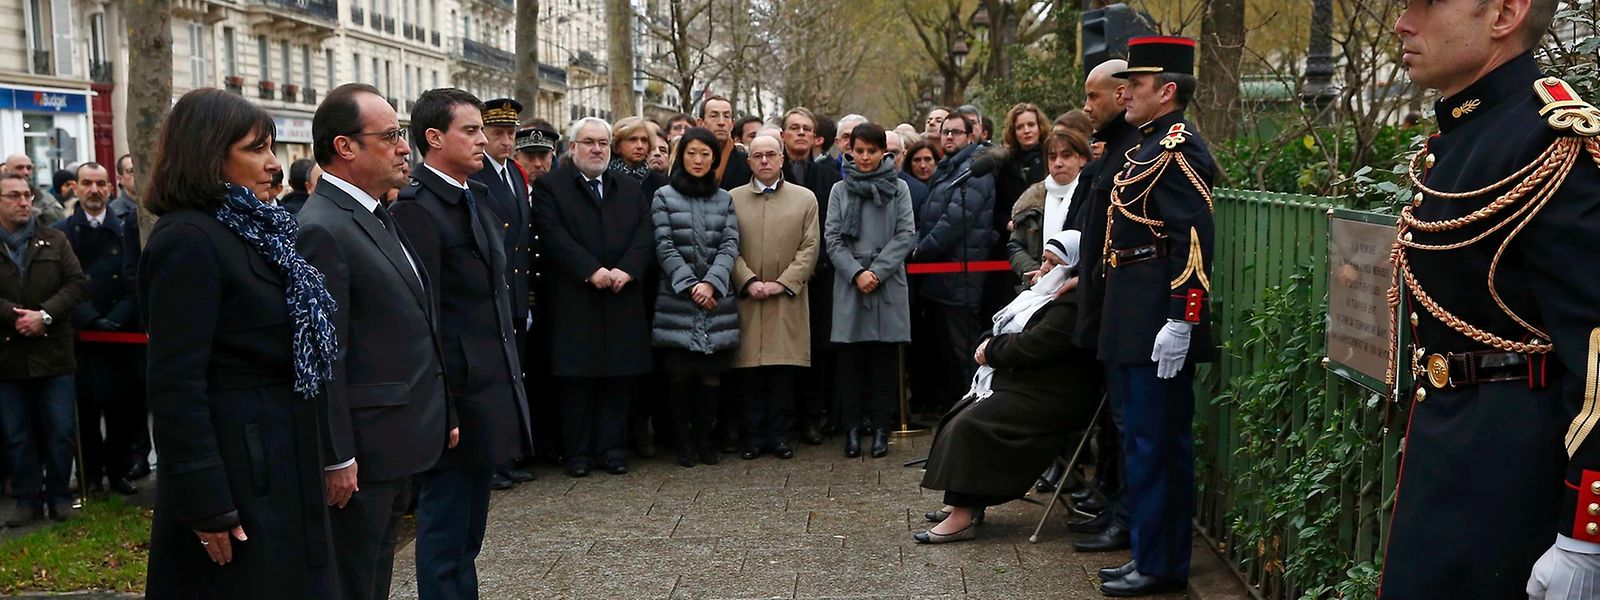 präsident Francois Hollande, die Pariser Bürgermeisterin Anne Hidalgo und Premierminister Manuel Valls beim Enthüllen einer der Gedenktafeln.